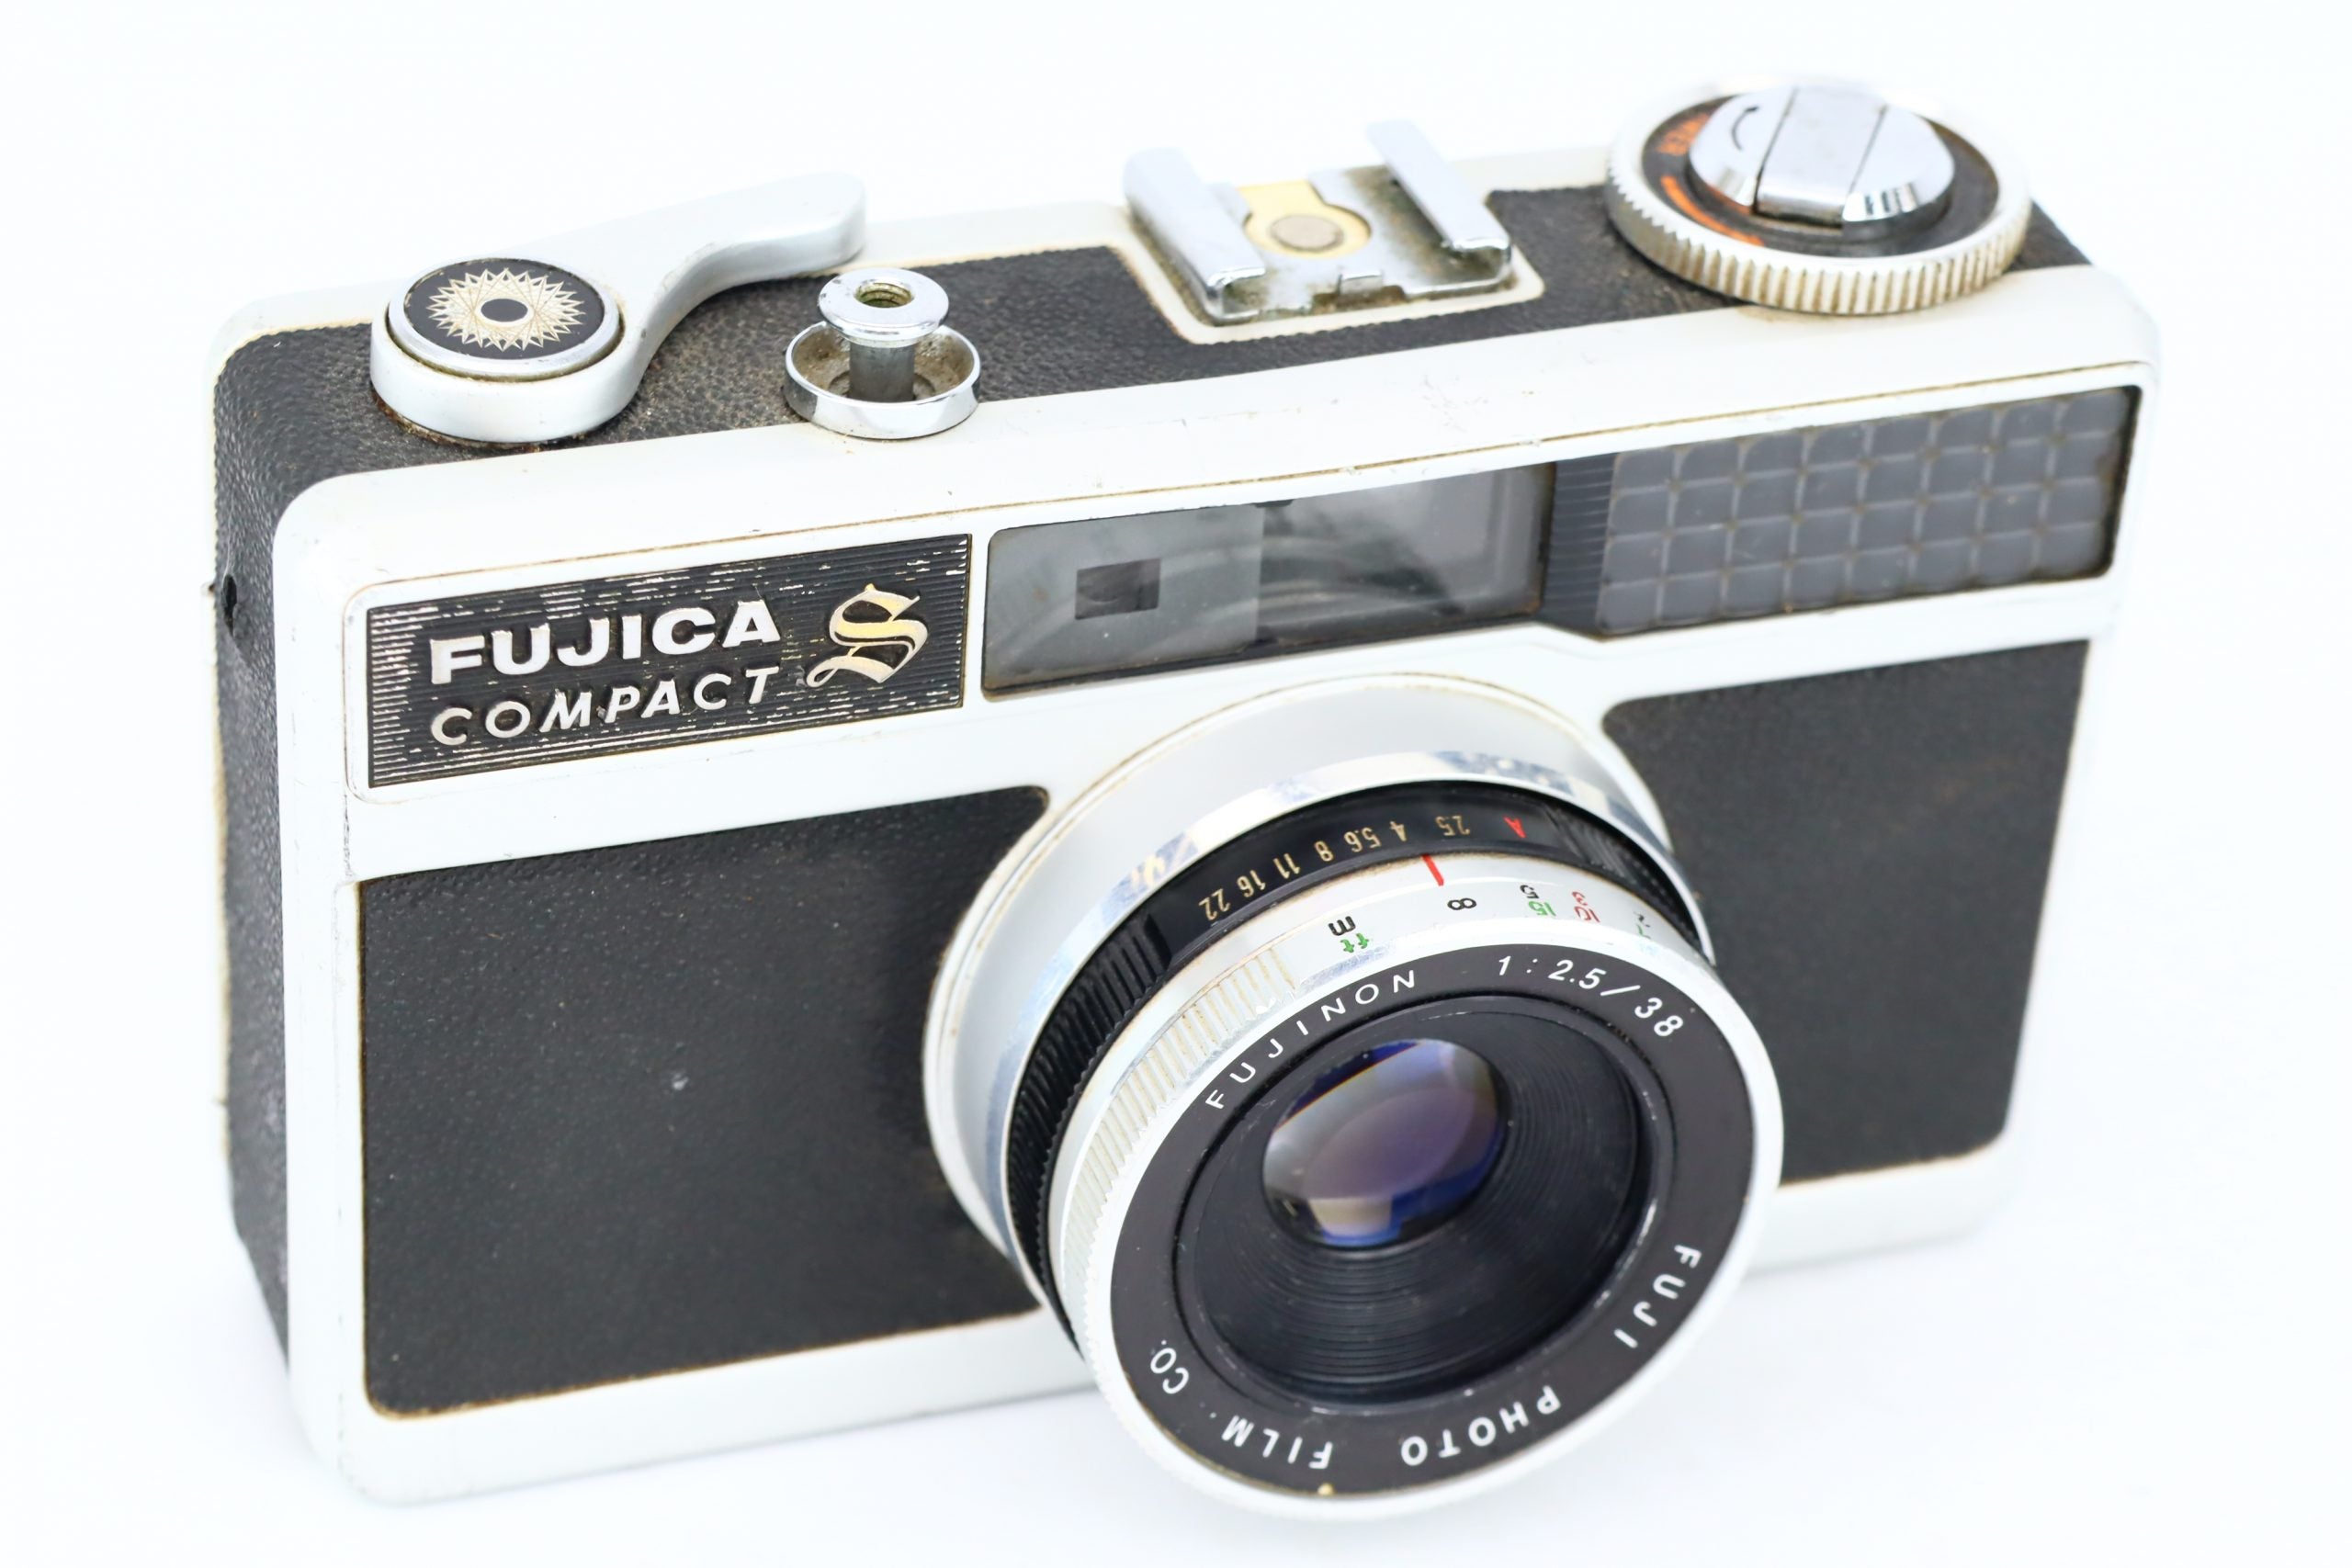 Fujica compact S 2.5/38